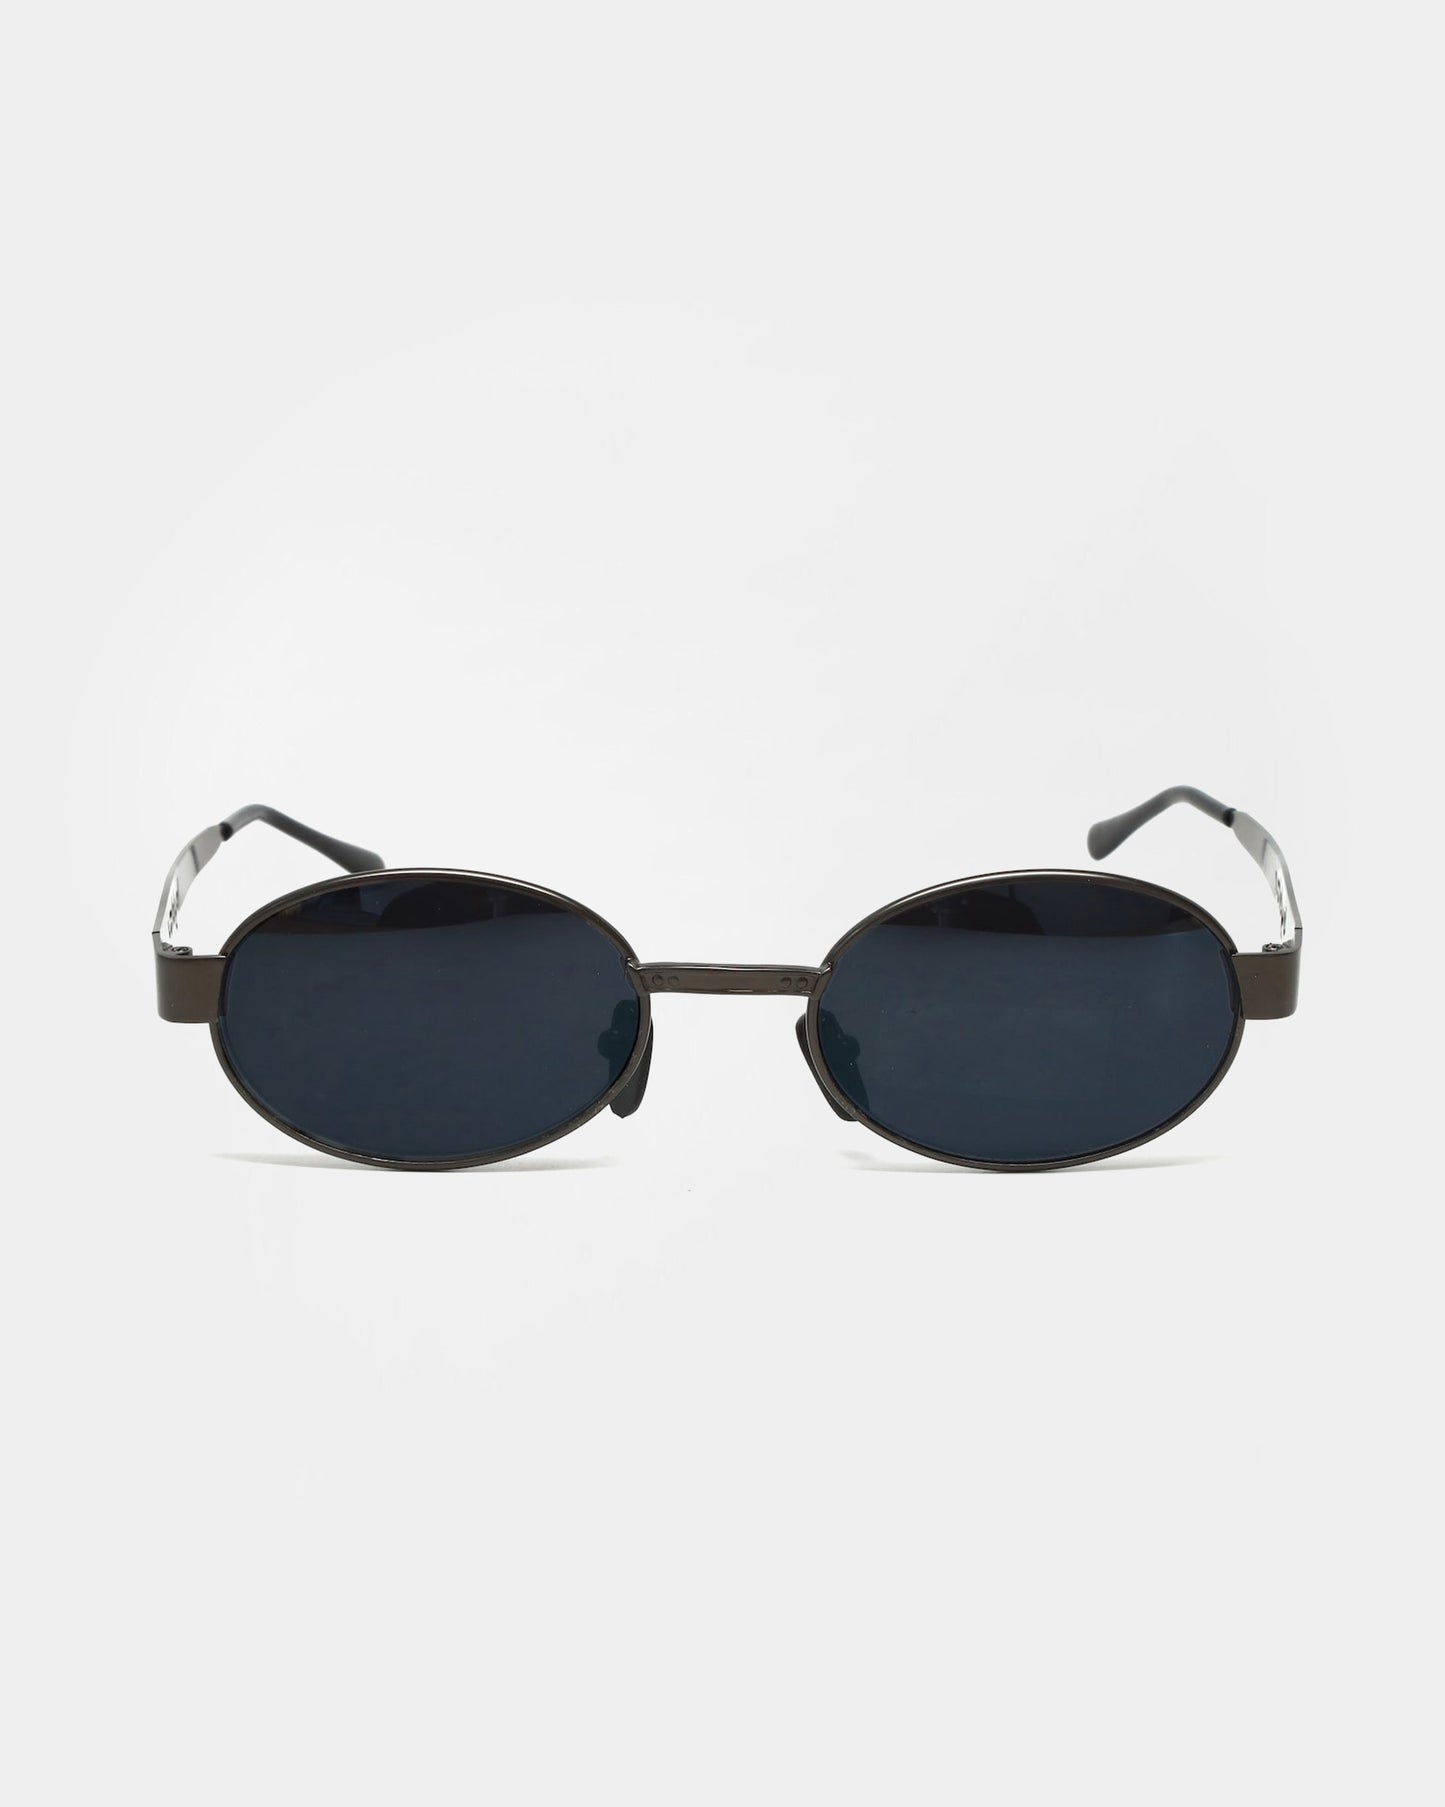 NOS 90s Metal Frame Sunglasses